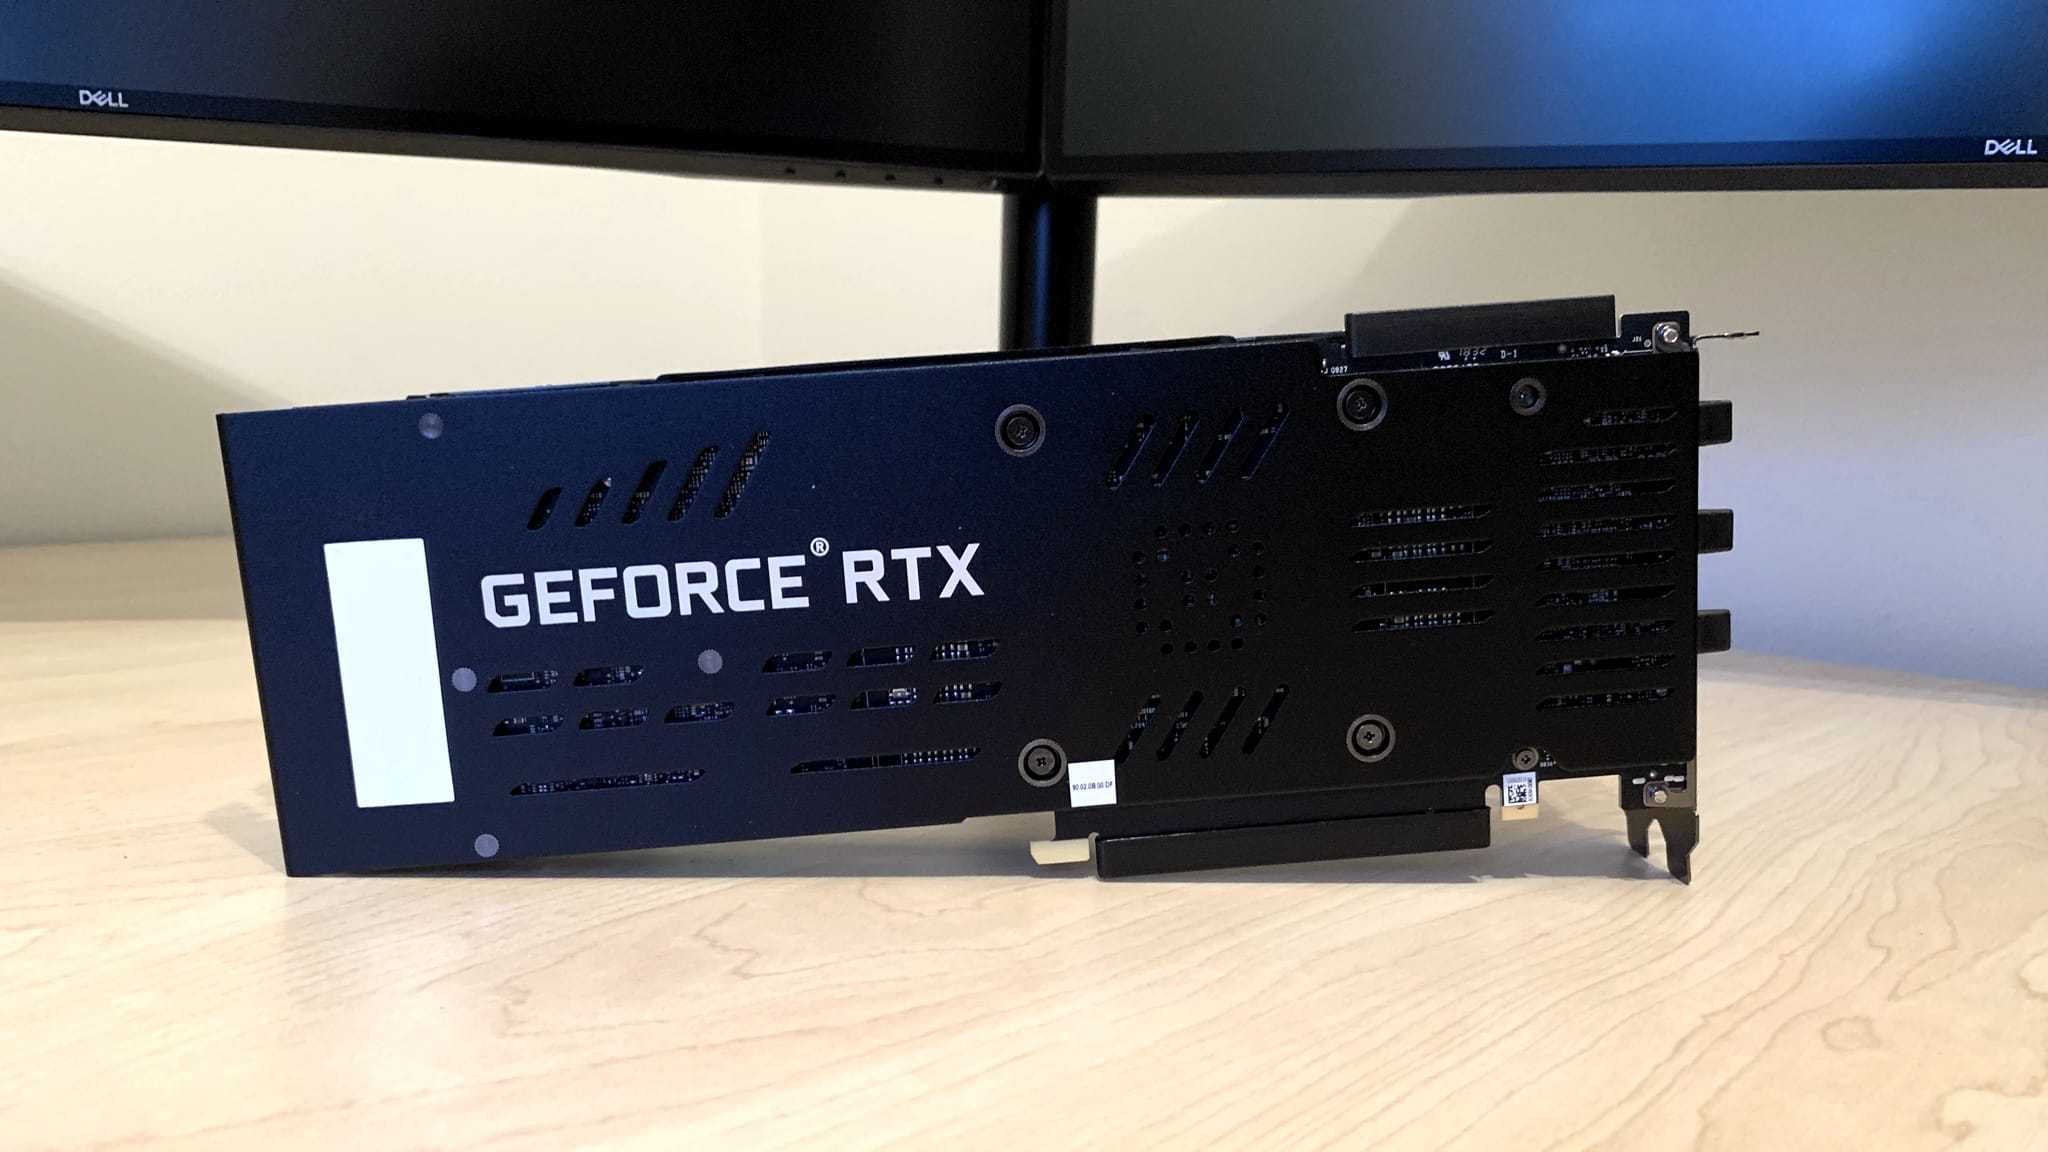 PNY GeForce RTX 2080 Ti